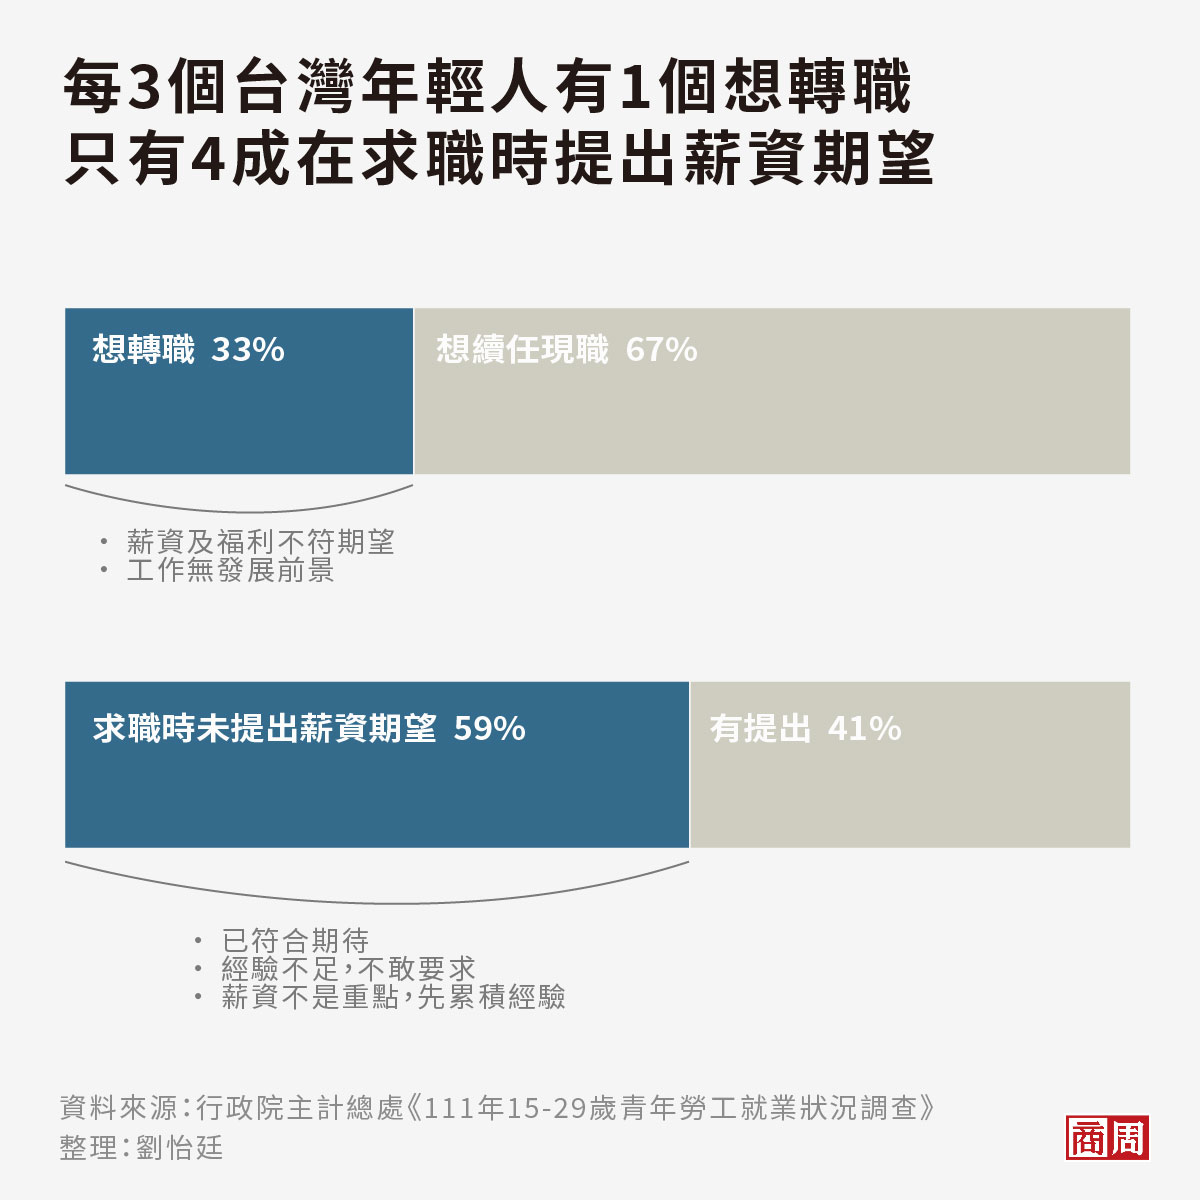 每3個台灣年輕人其實就有1個正考慮轉職，6成在求職過程中並沒有提出薪資期待。